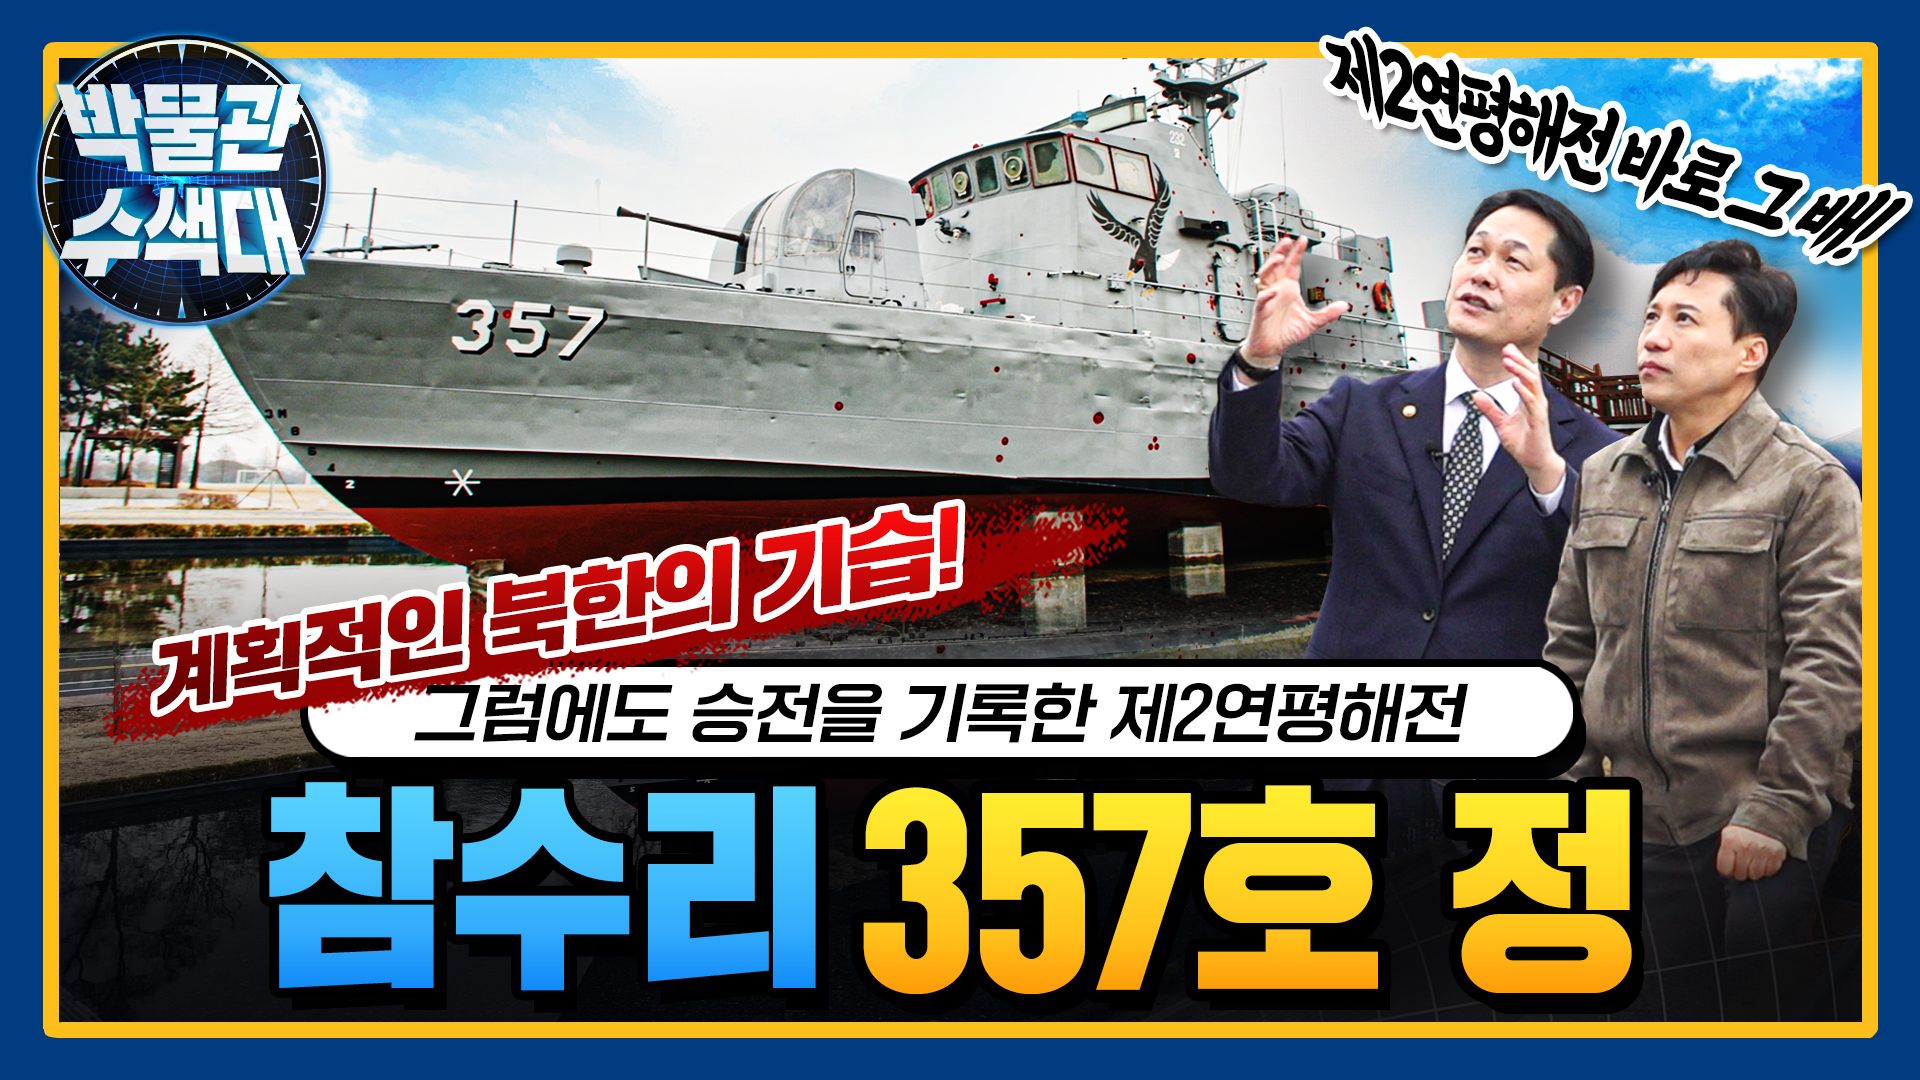 북한의 짜여진 기습 도발! 강력한 반격으로 승전의 역사를 기록한 주인공!  참수리357호 정! 